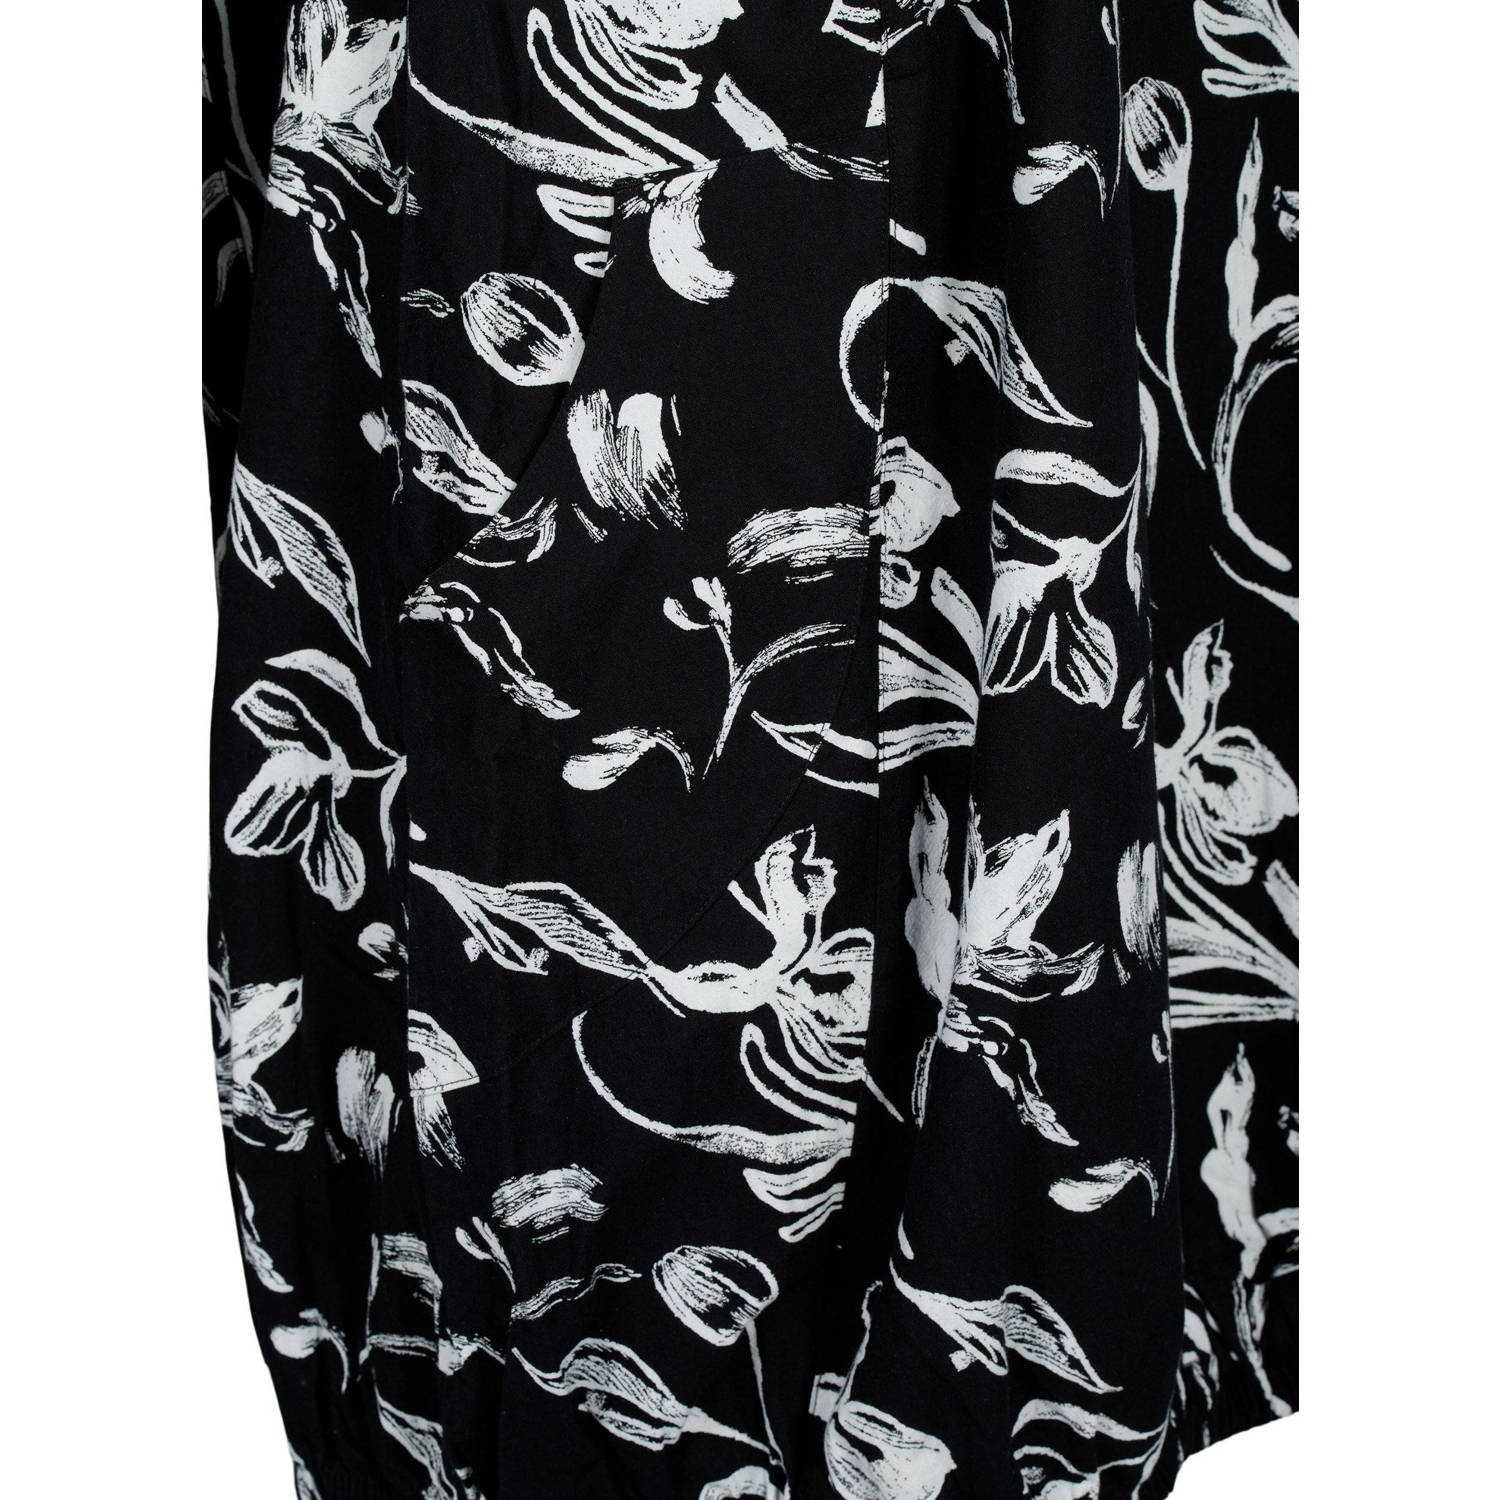 Zizzi jurk met all over print zwart wit